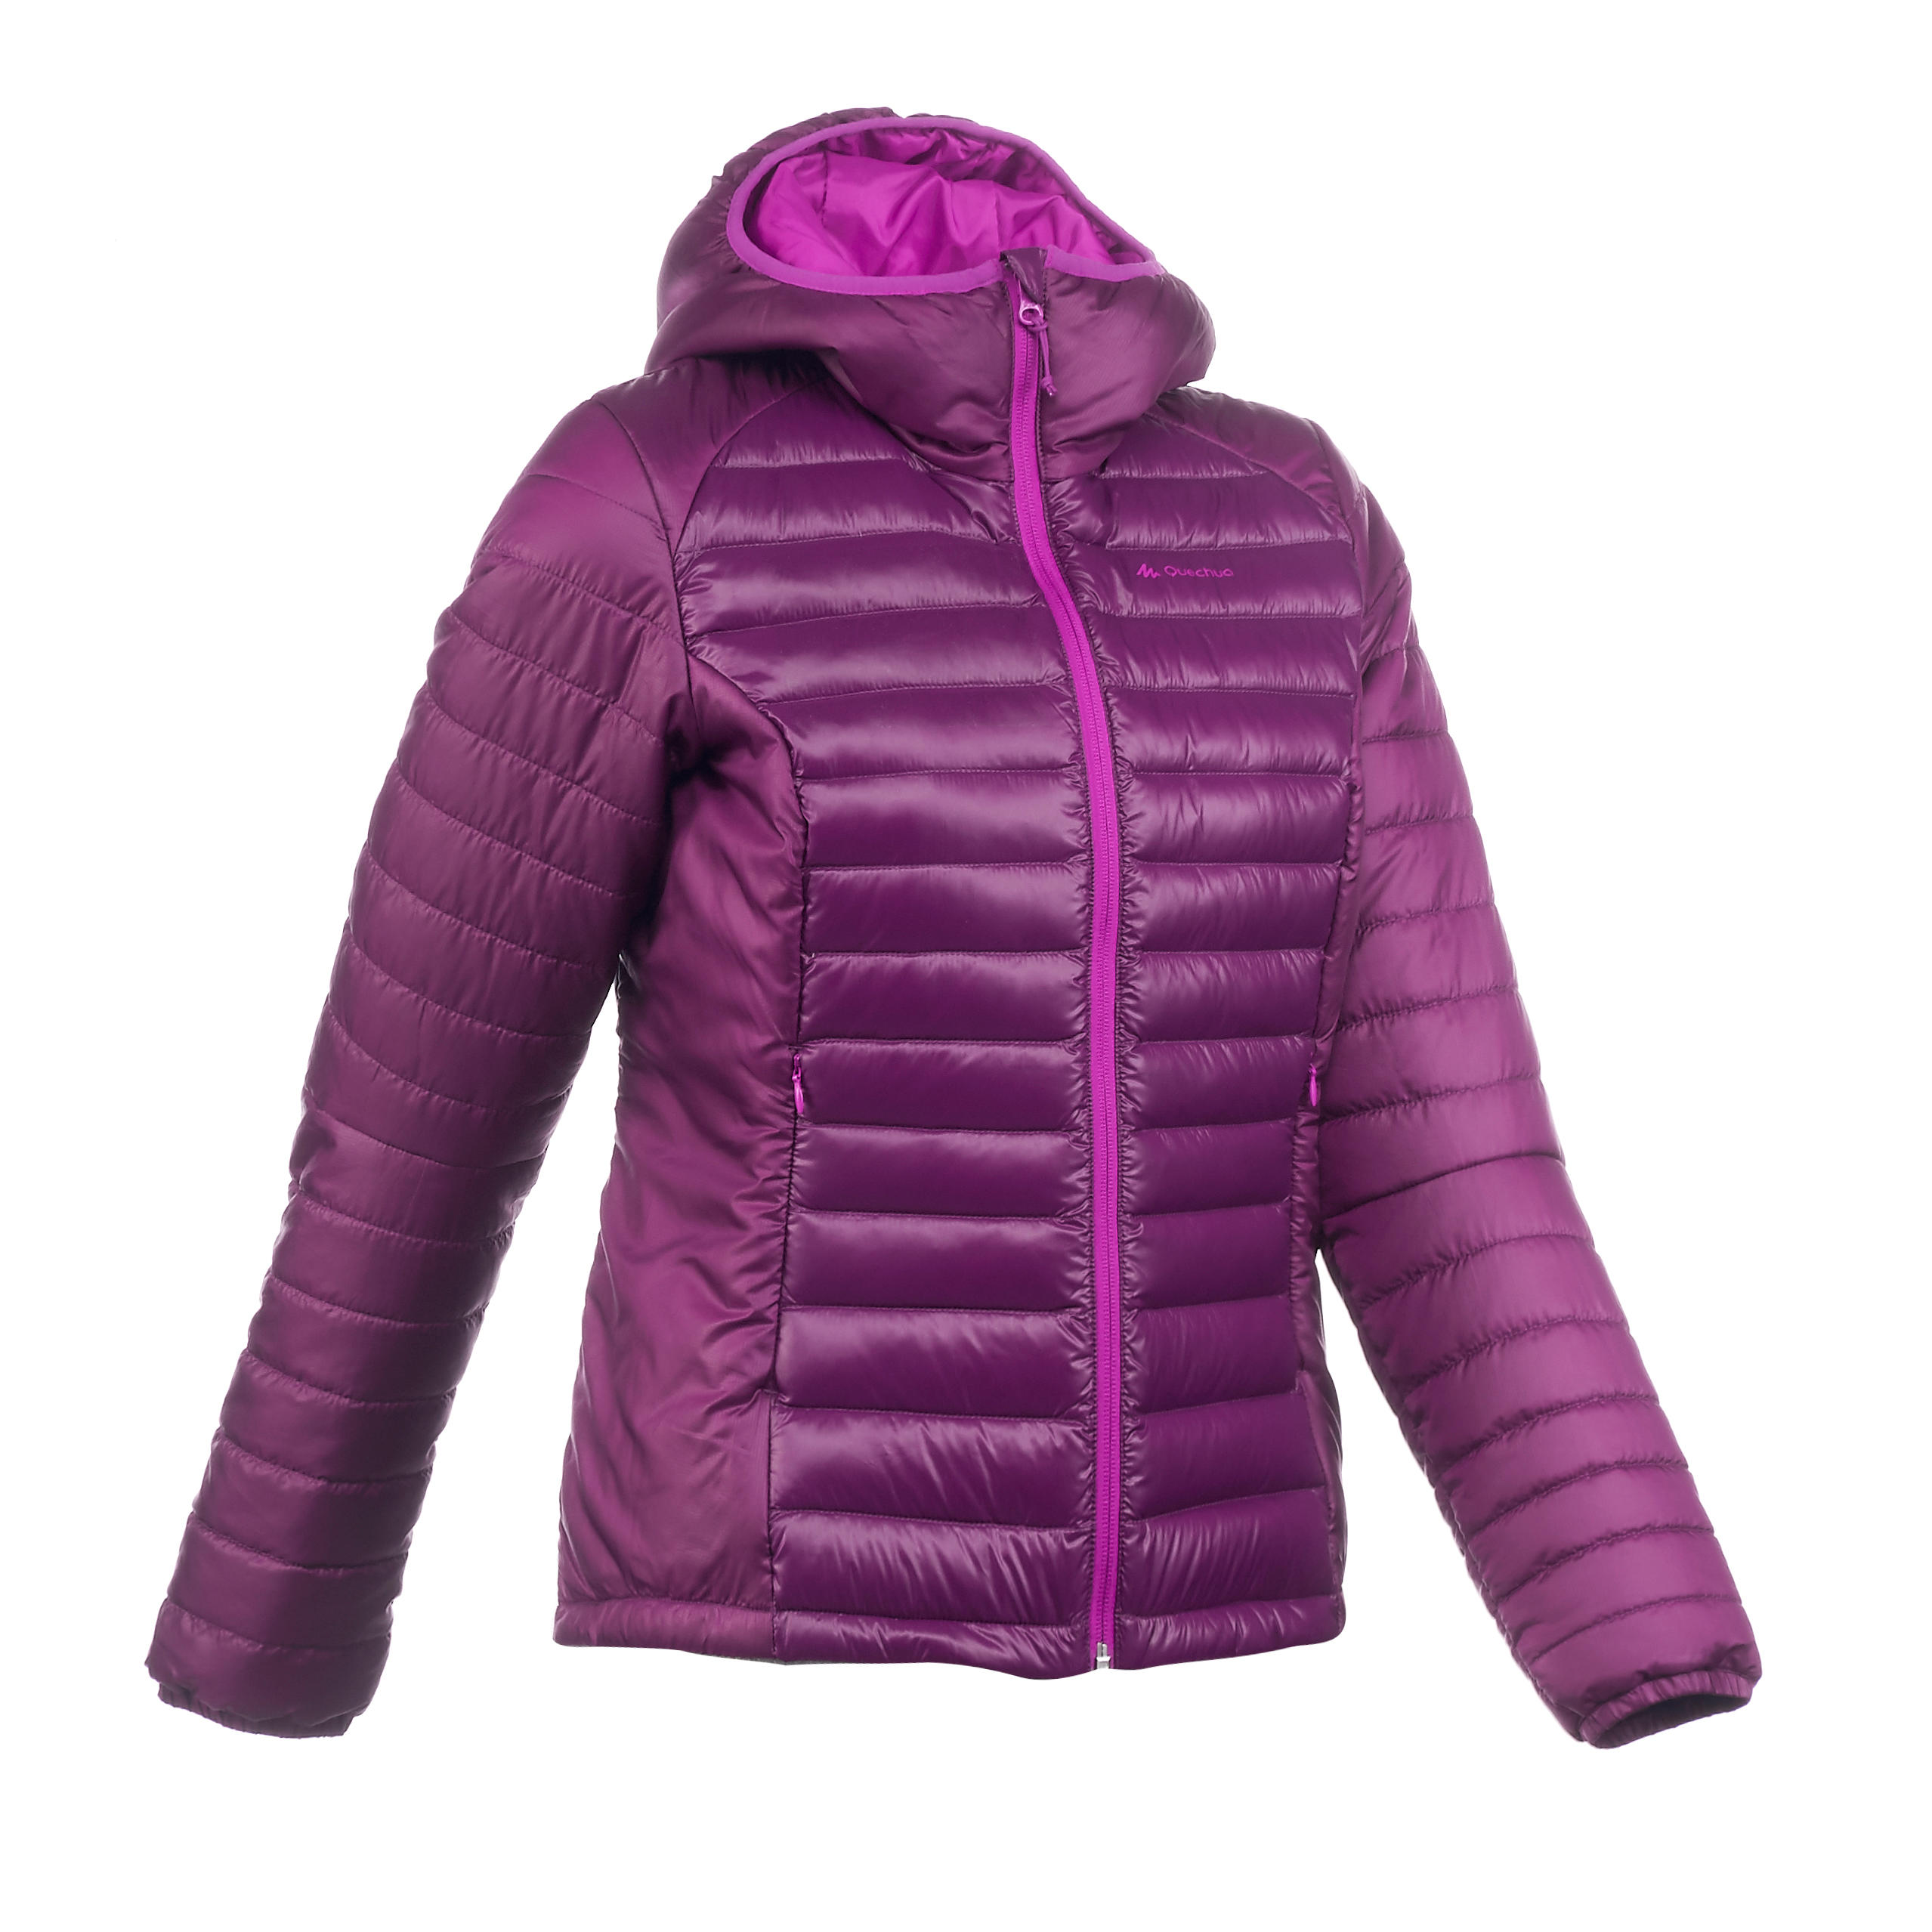 FORCLAZ Women's X-Light 1 purple trekking down jacket